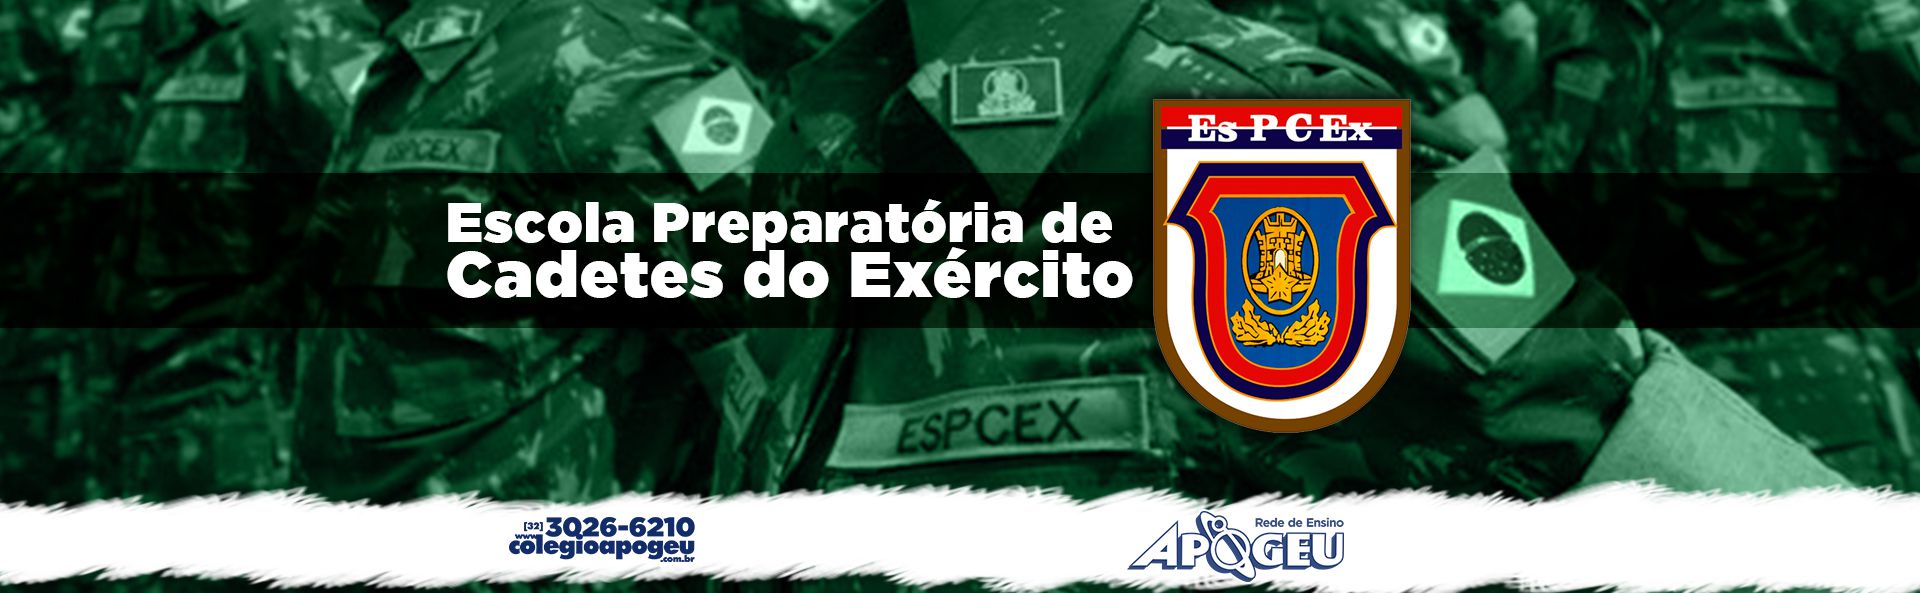 Resolução EsPCEx 2014 - 2º dia by Colégio APOGEU - Issuu